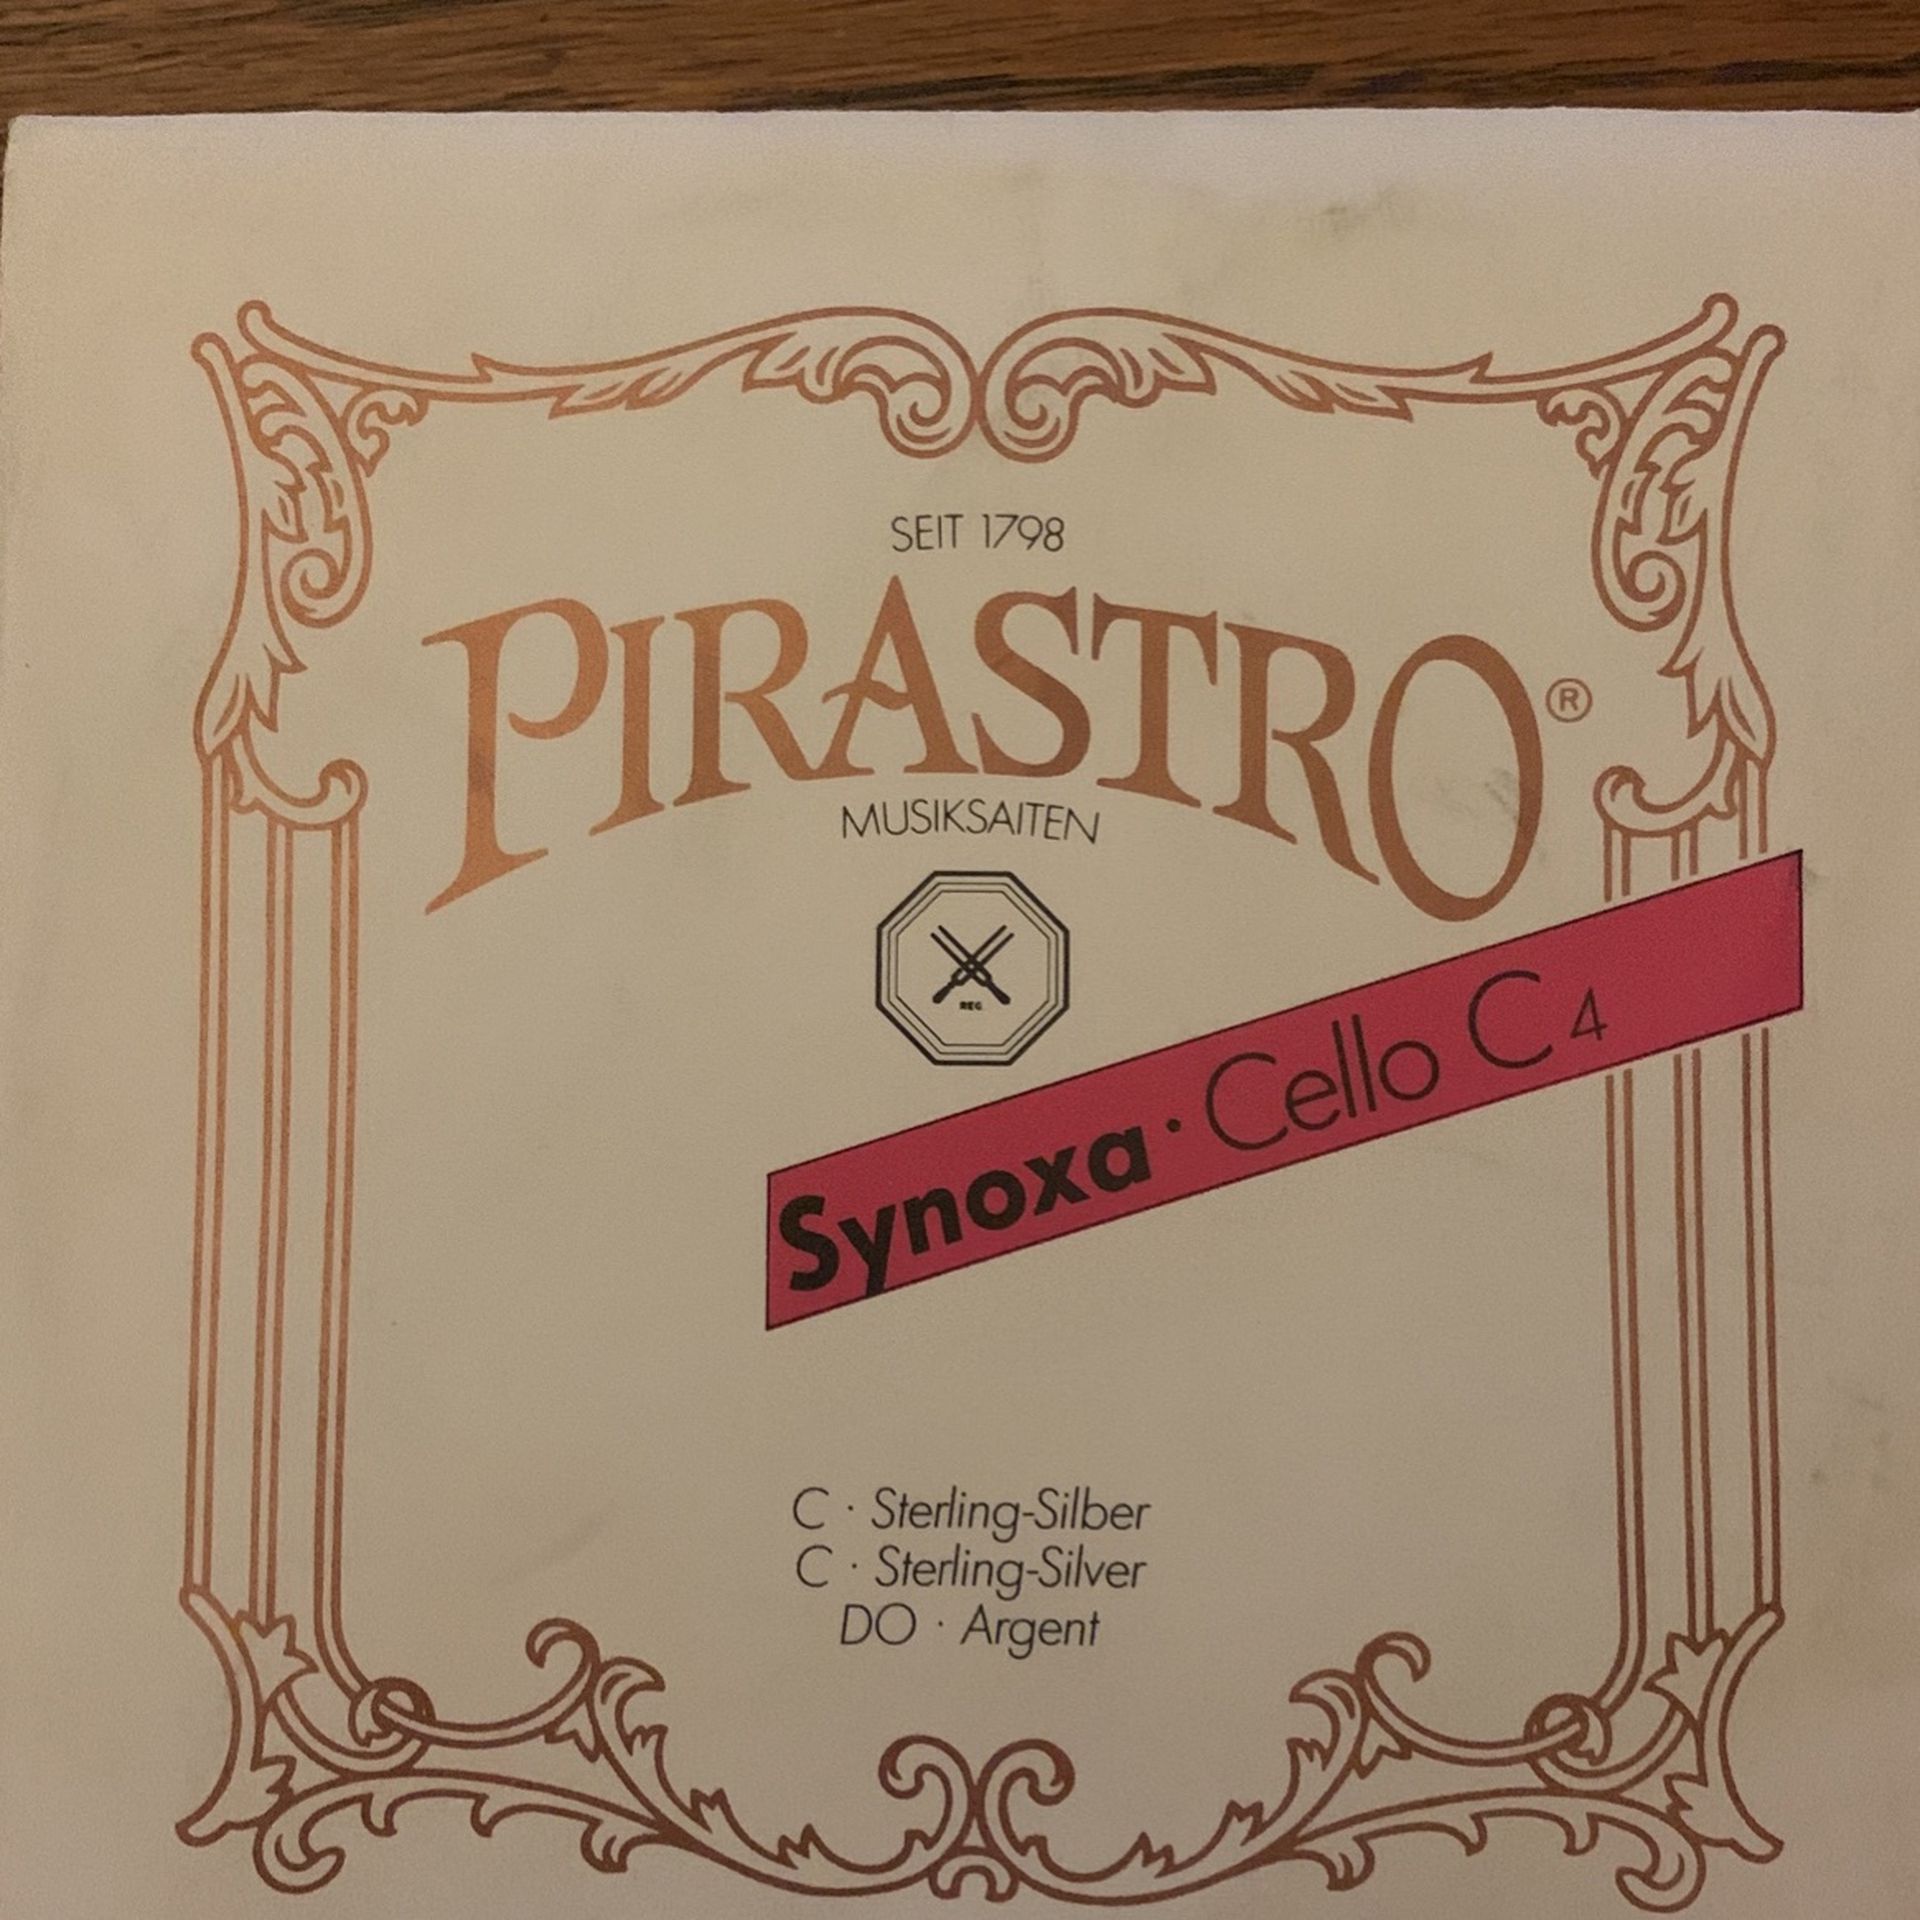 Pirastro Synoxa 4/4 Cello C String New